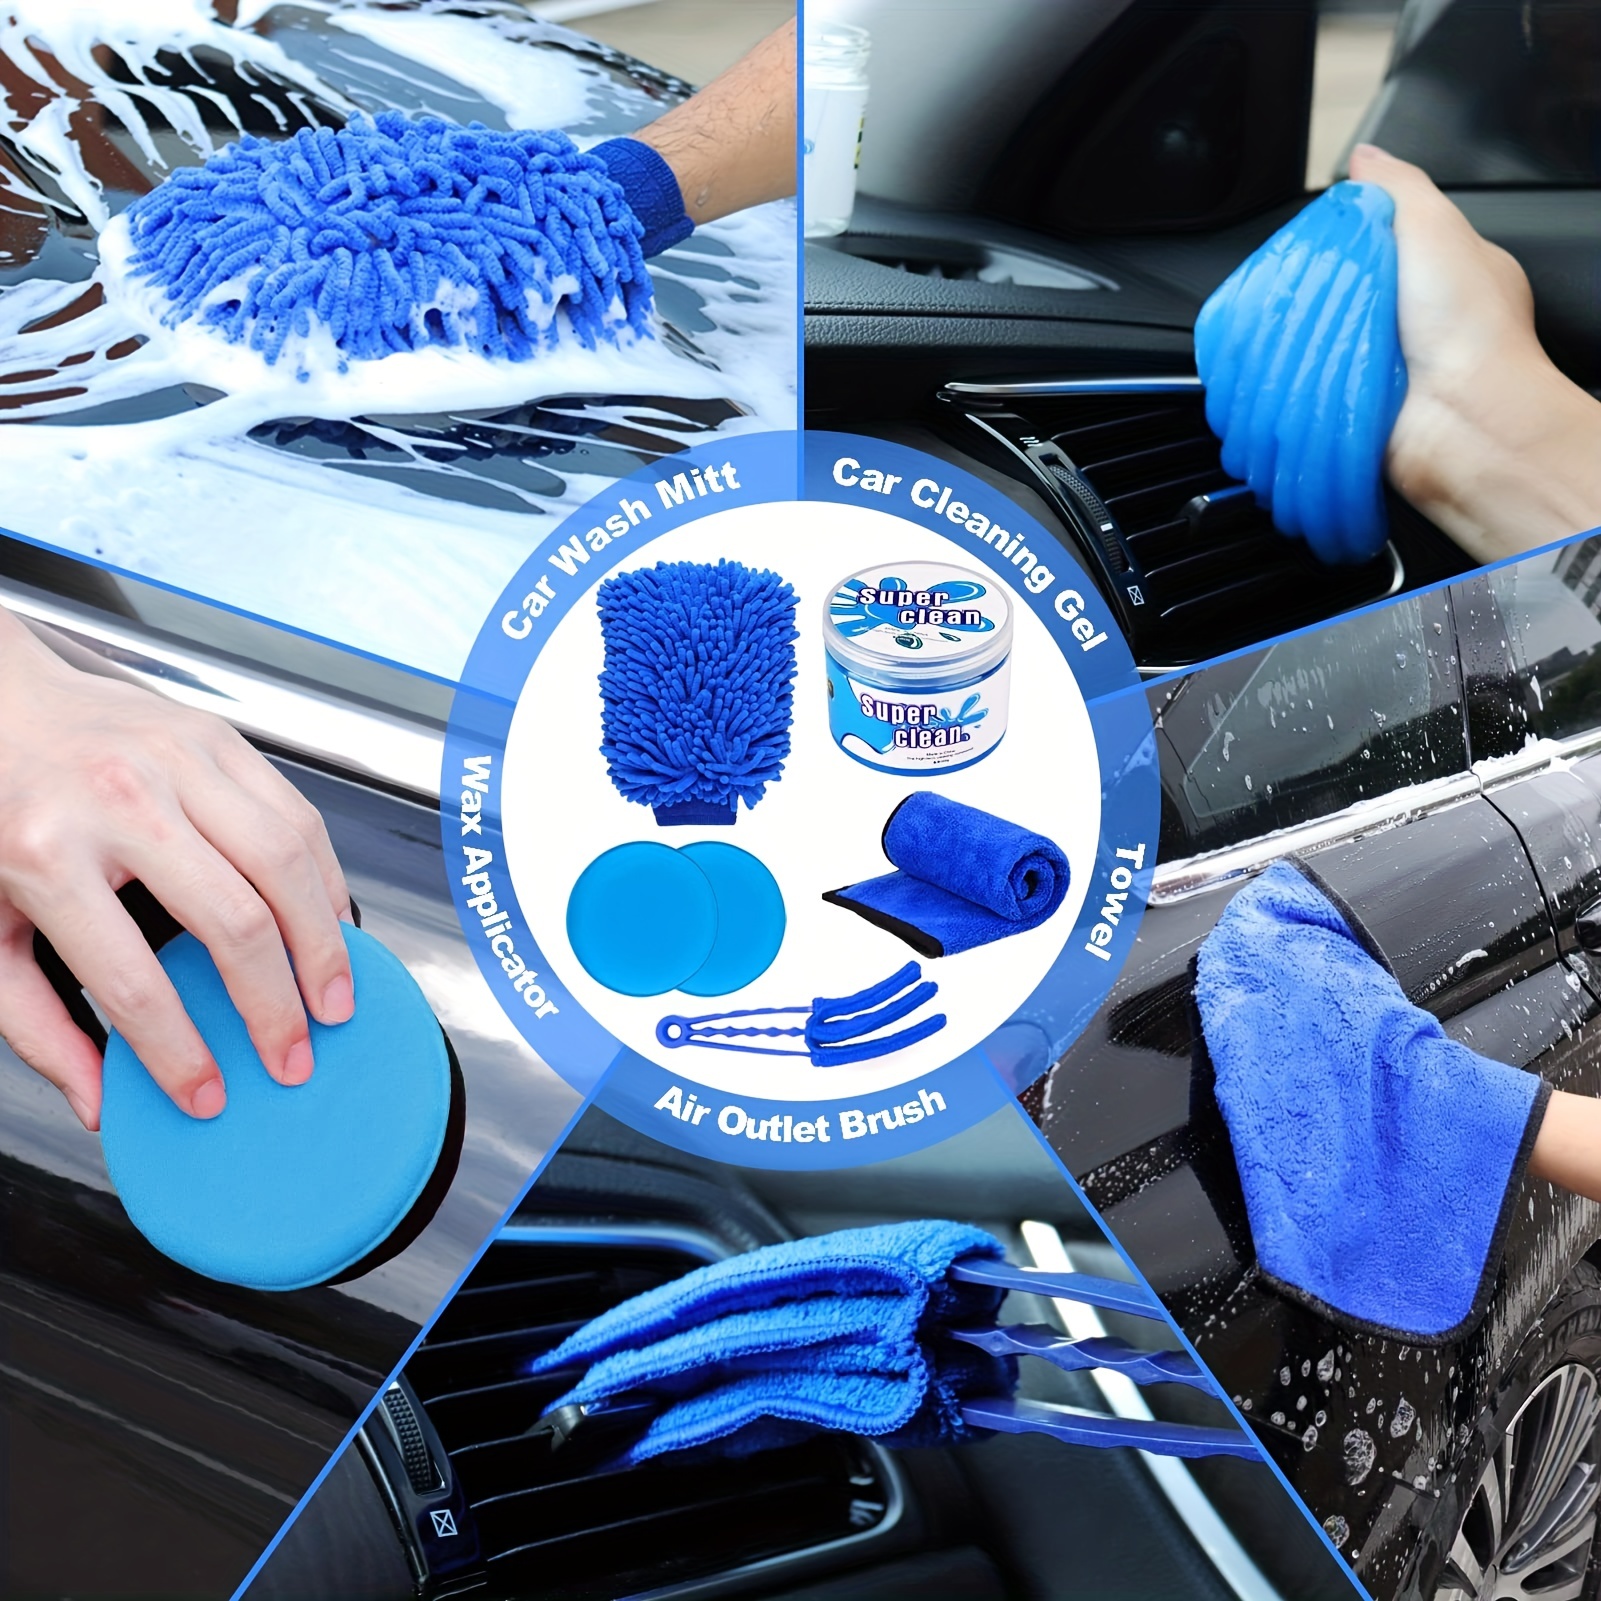 Professional Auto Detailing Kit 21pc, Car Care Kits